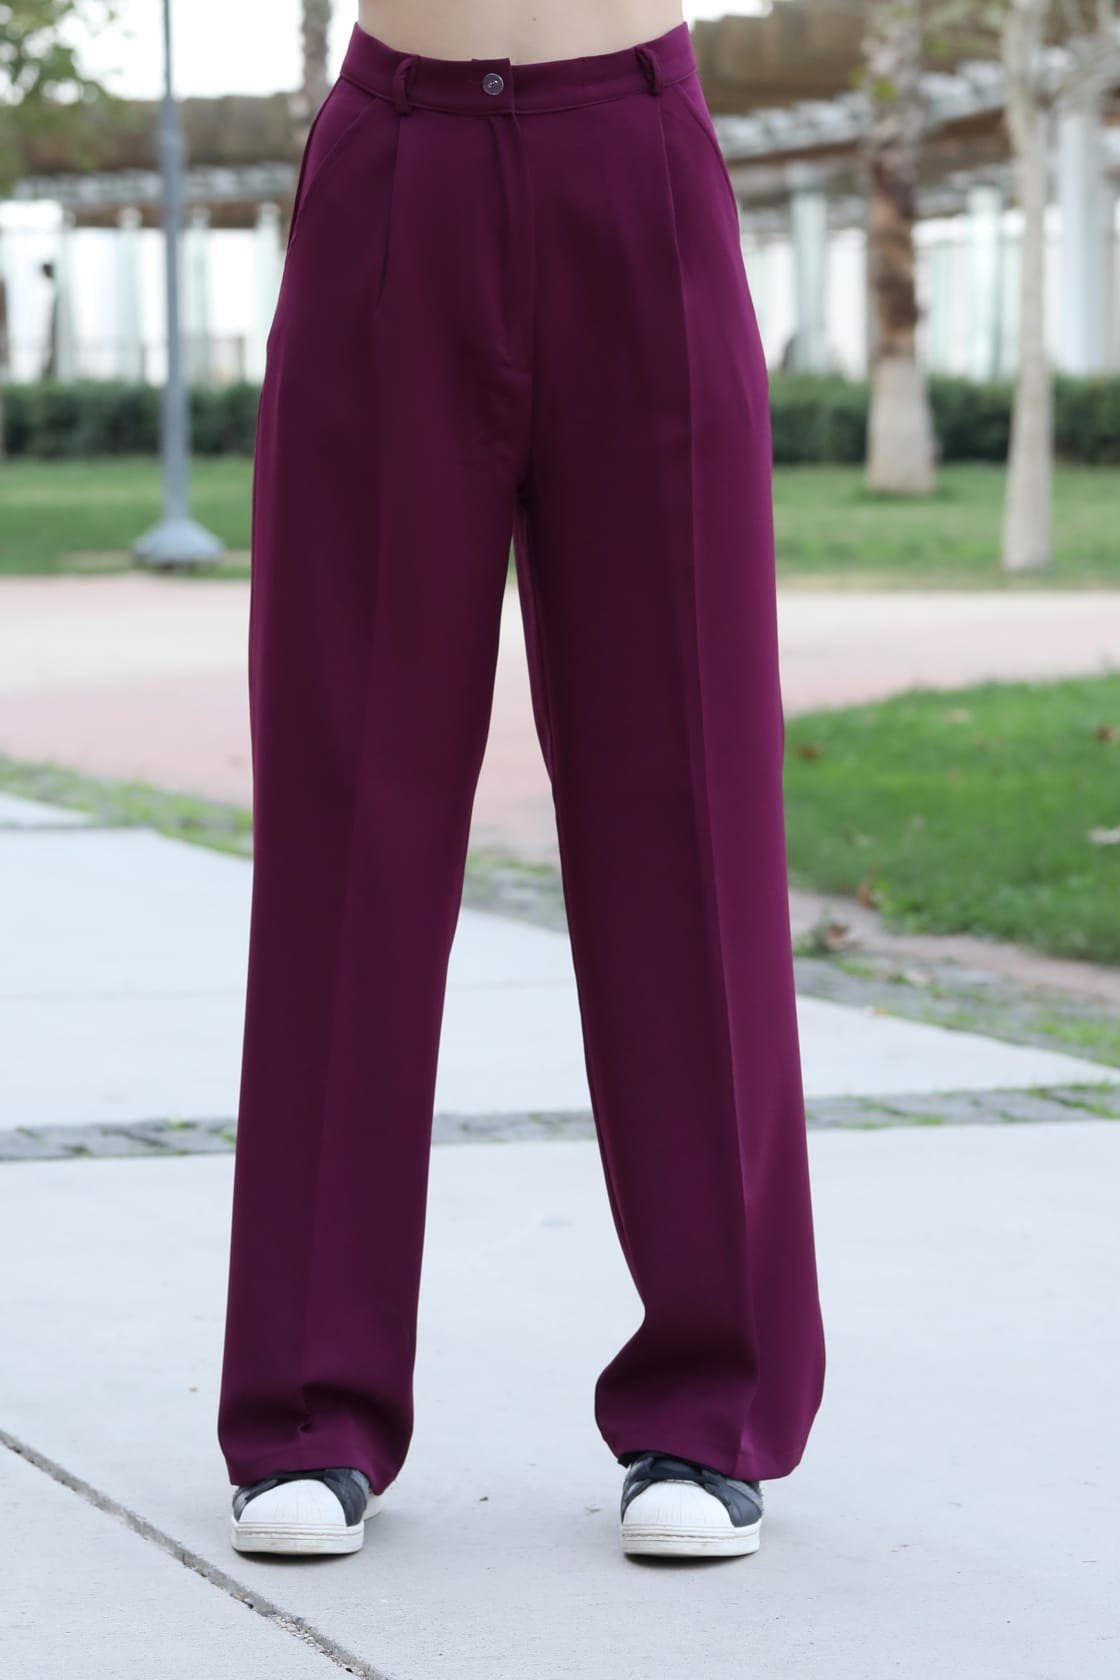 Hose Hose lange Weite Lässig Modavitrini Damen elegant Palazzohose Hohe Locker Farben Violett 10 sportlich Taille,